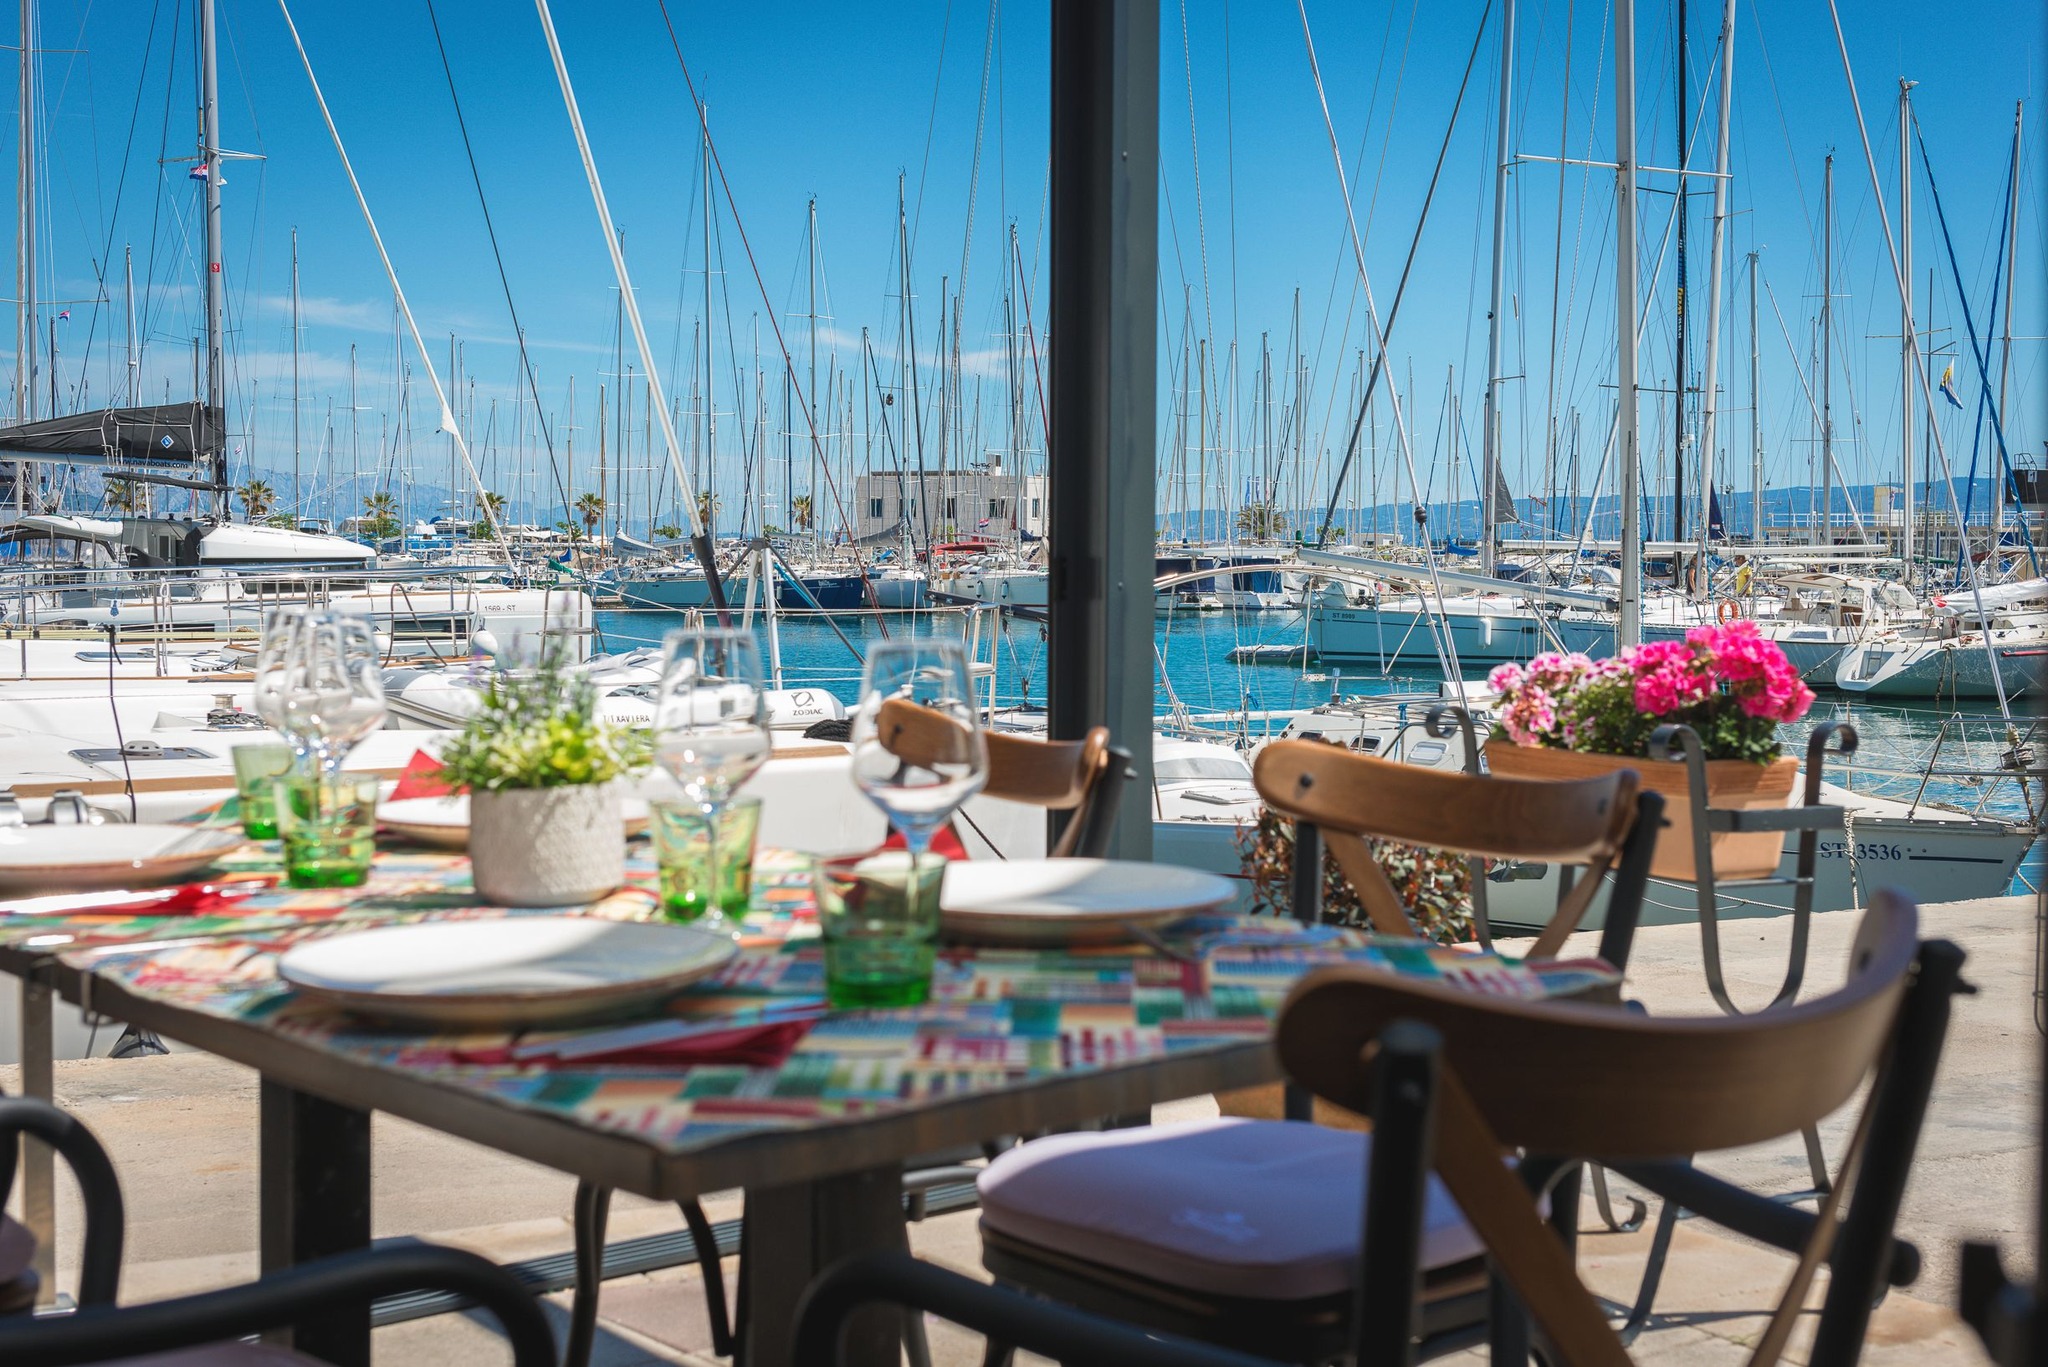 Velum - Restaurants with a view in Split